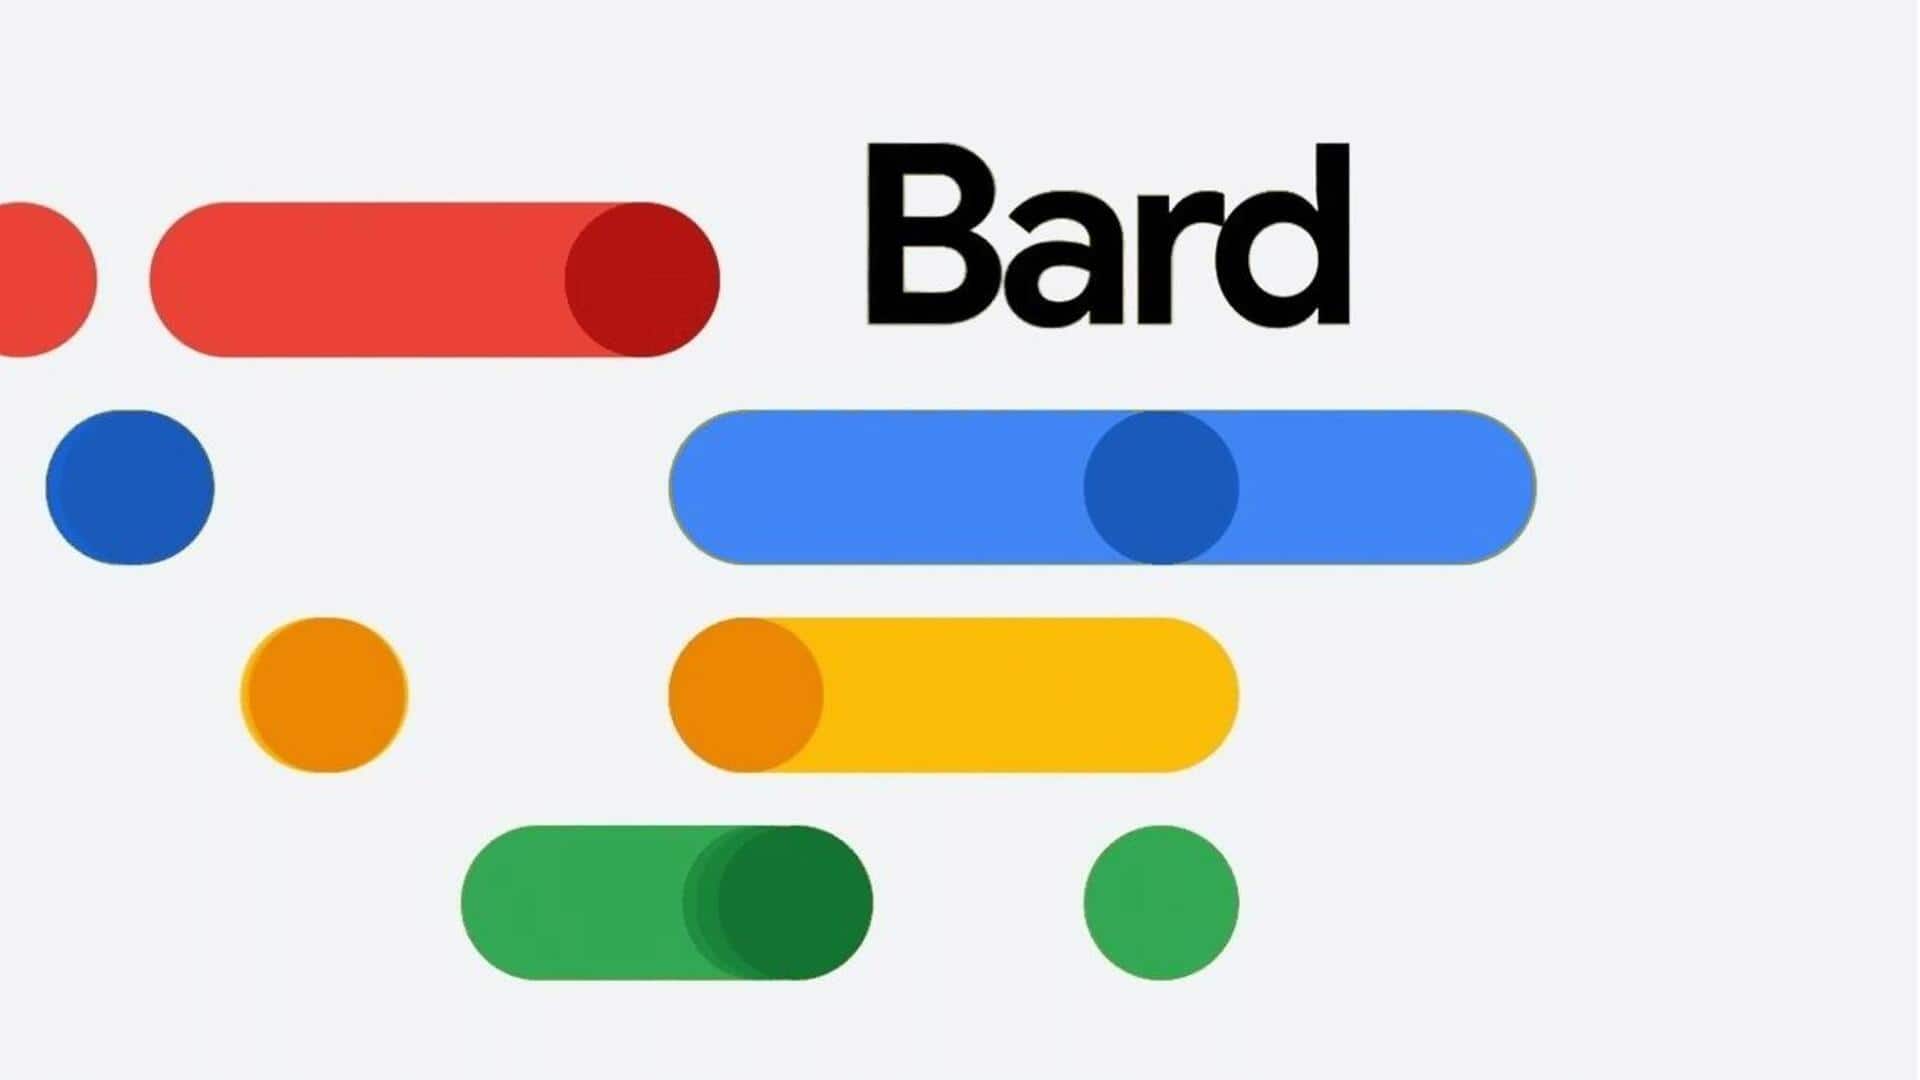 गूगल बार्ड चैटबॉट का करना चाहते हैं उपयोग? यह है सबसे आसान तरीका 